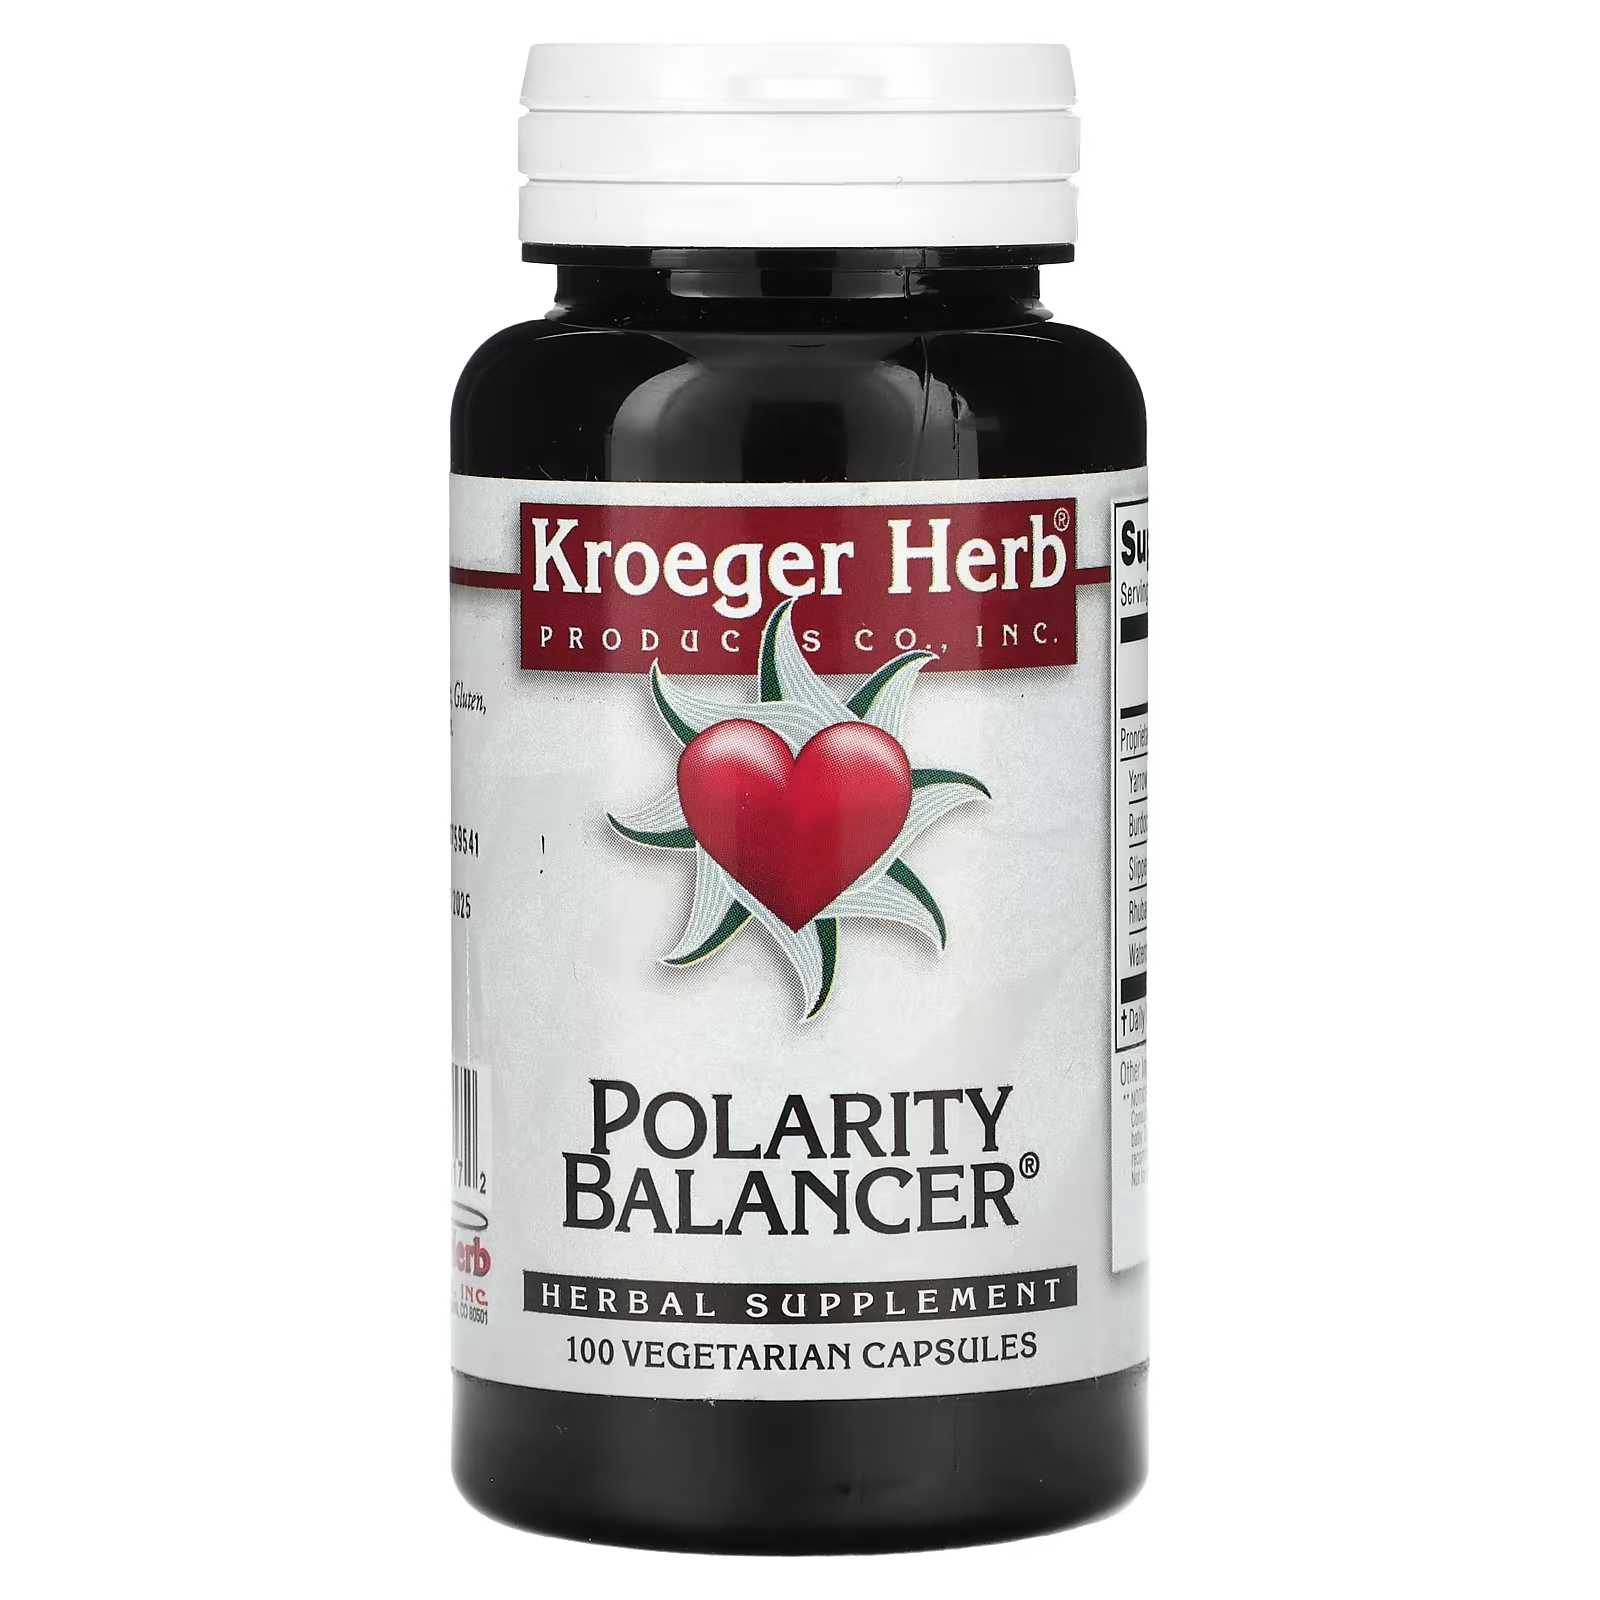 Растительная добавка Kroeger Herb Co балансировщик полярности, 100 капсул растительная добавка kroeger herb co serenity 100 капсул